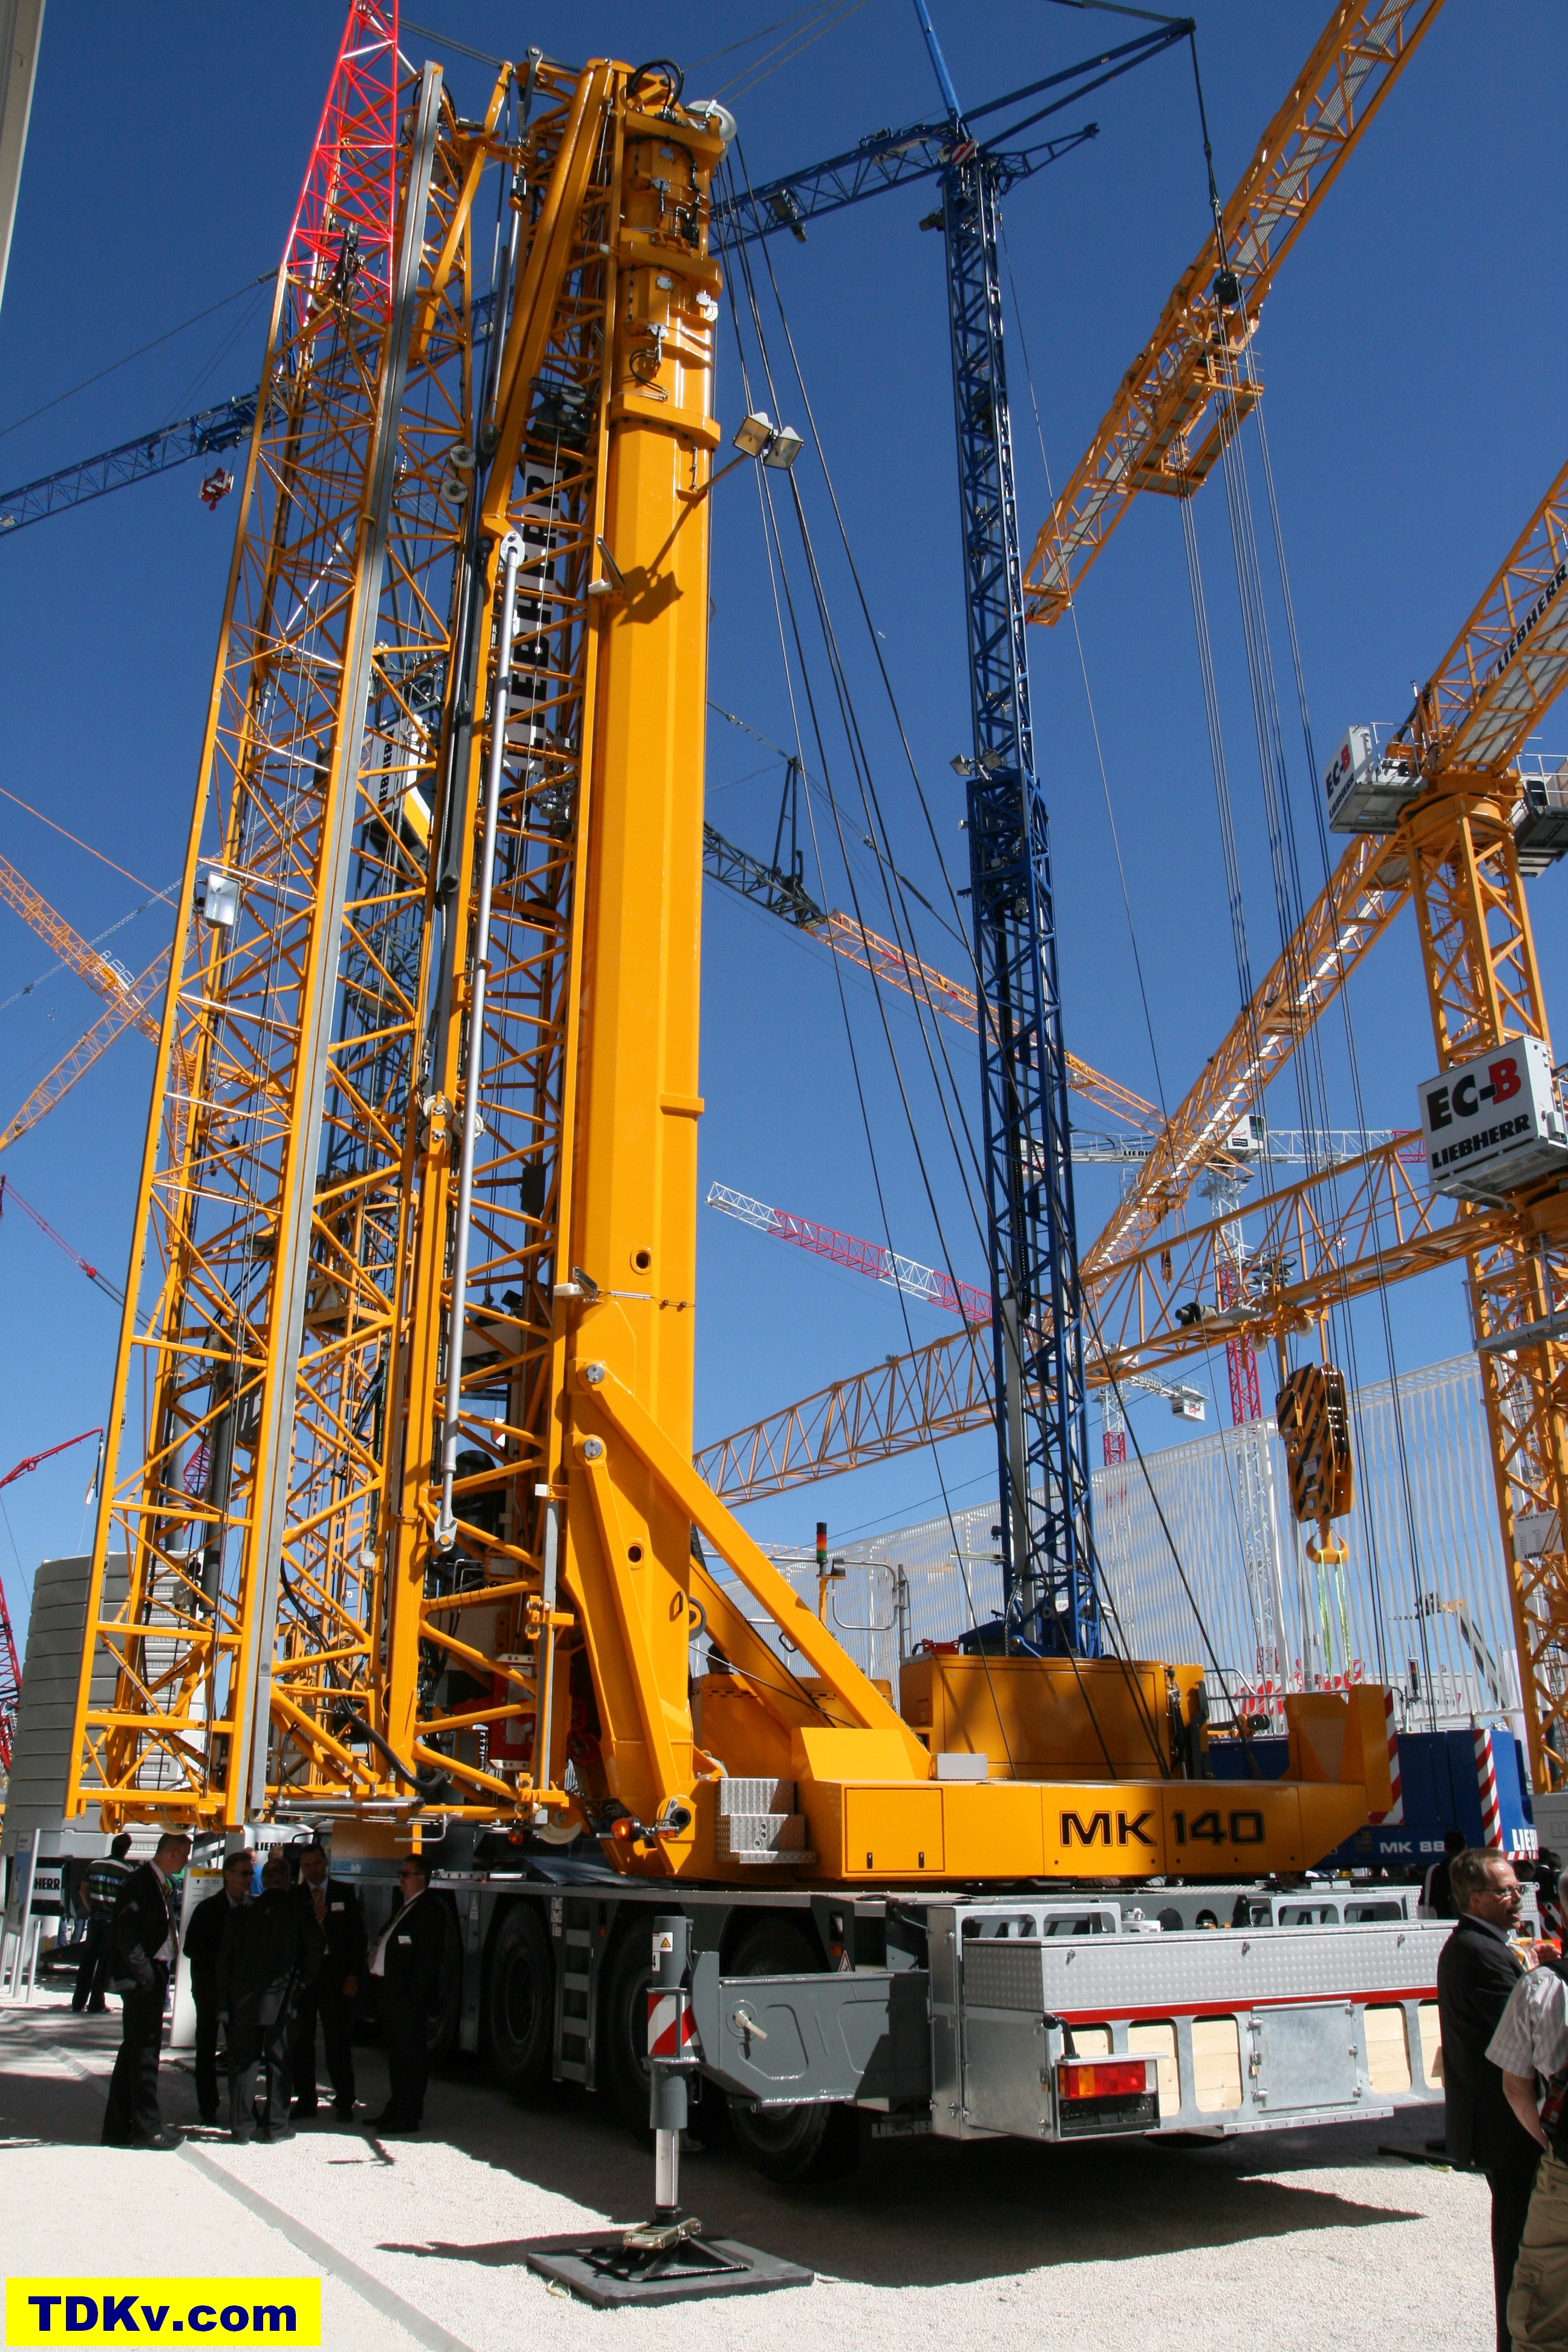 Liebherr MK 140 mobile tower crane